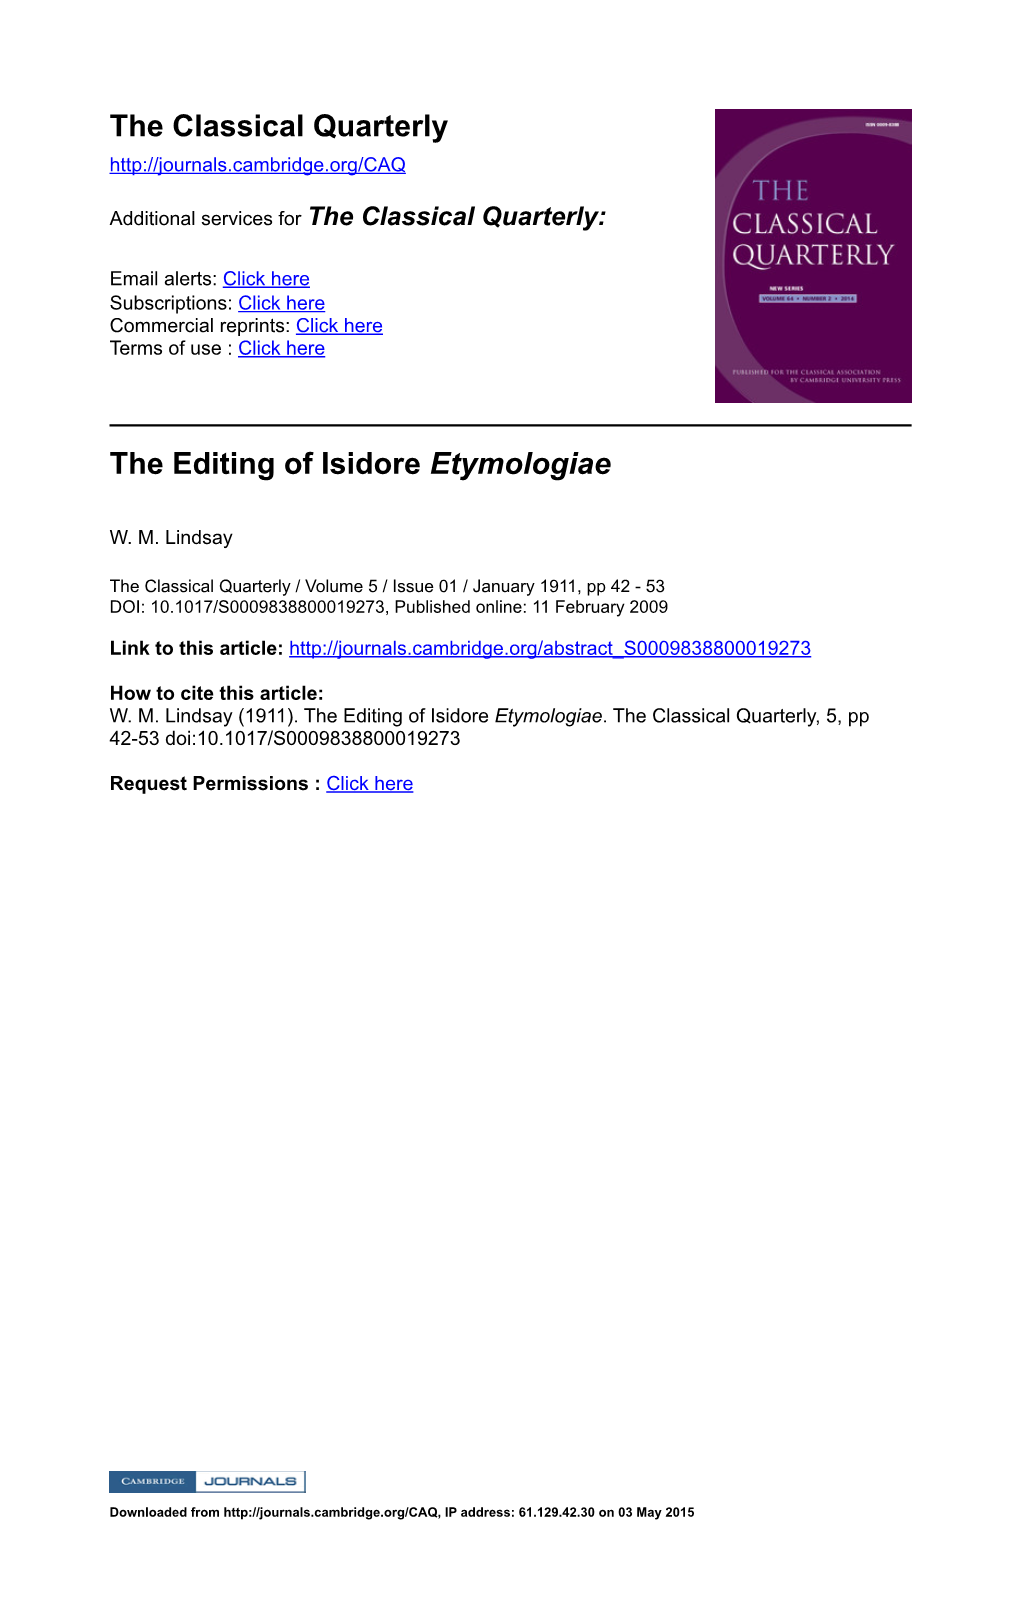 The Editing of Isidore Etymologiae